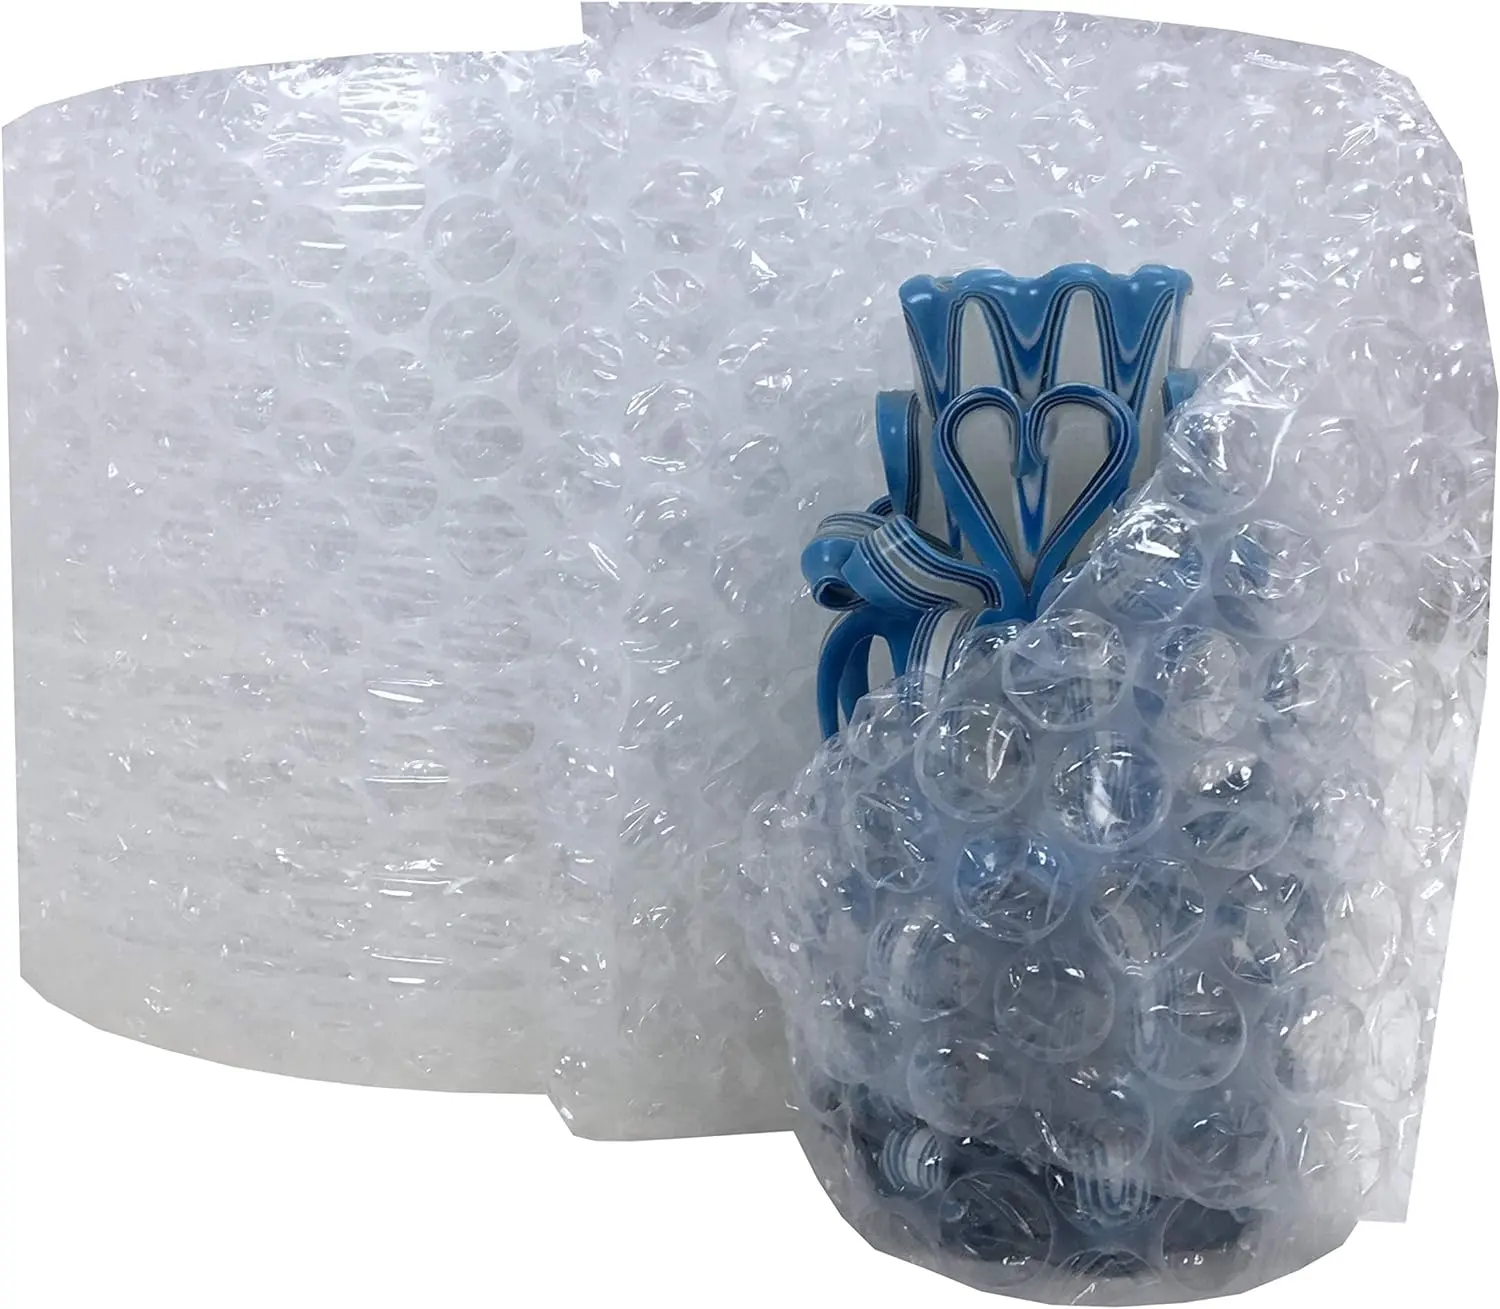 Envoltura acolchada de burbujas personalizada de burbuja grande de 5/16 pulgadas perforada para cajas móviles, suministros de amortiguación de envío, envoltura de embalaje de burbujas